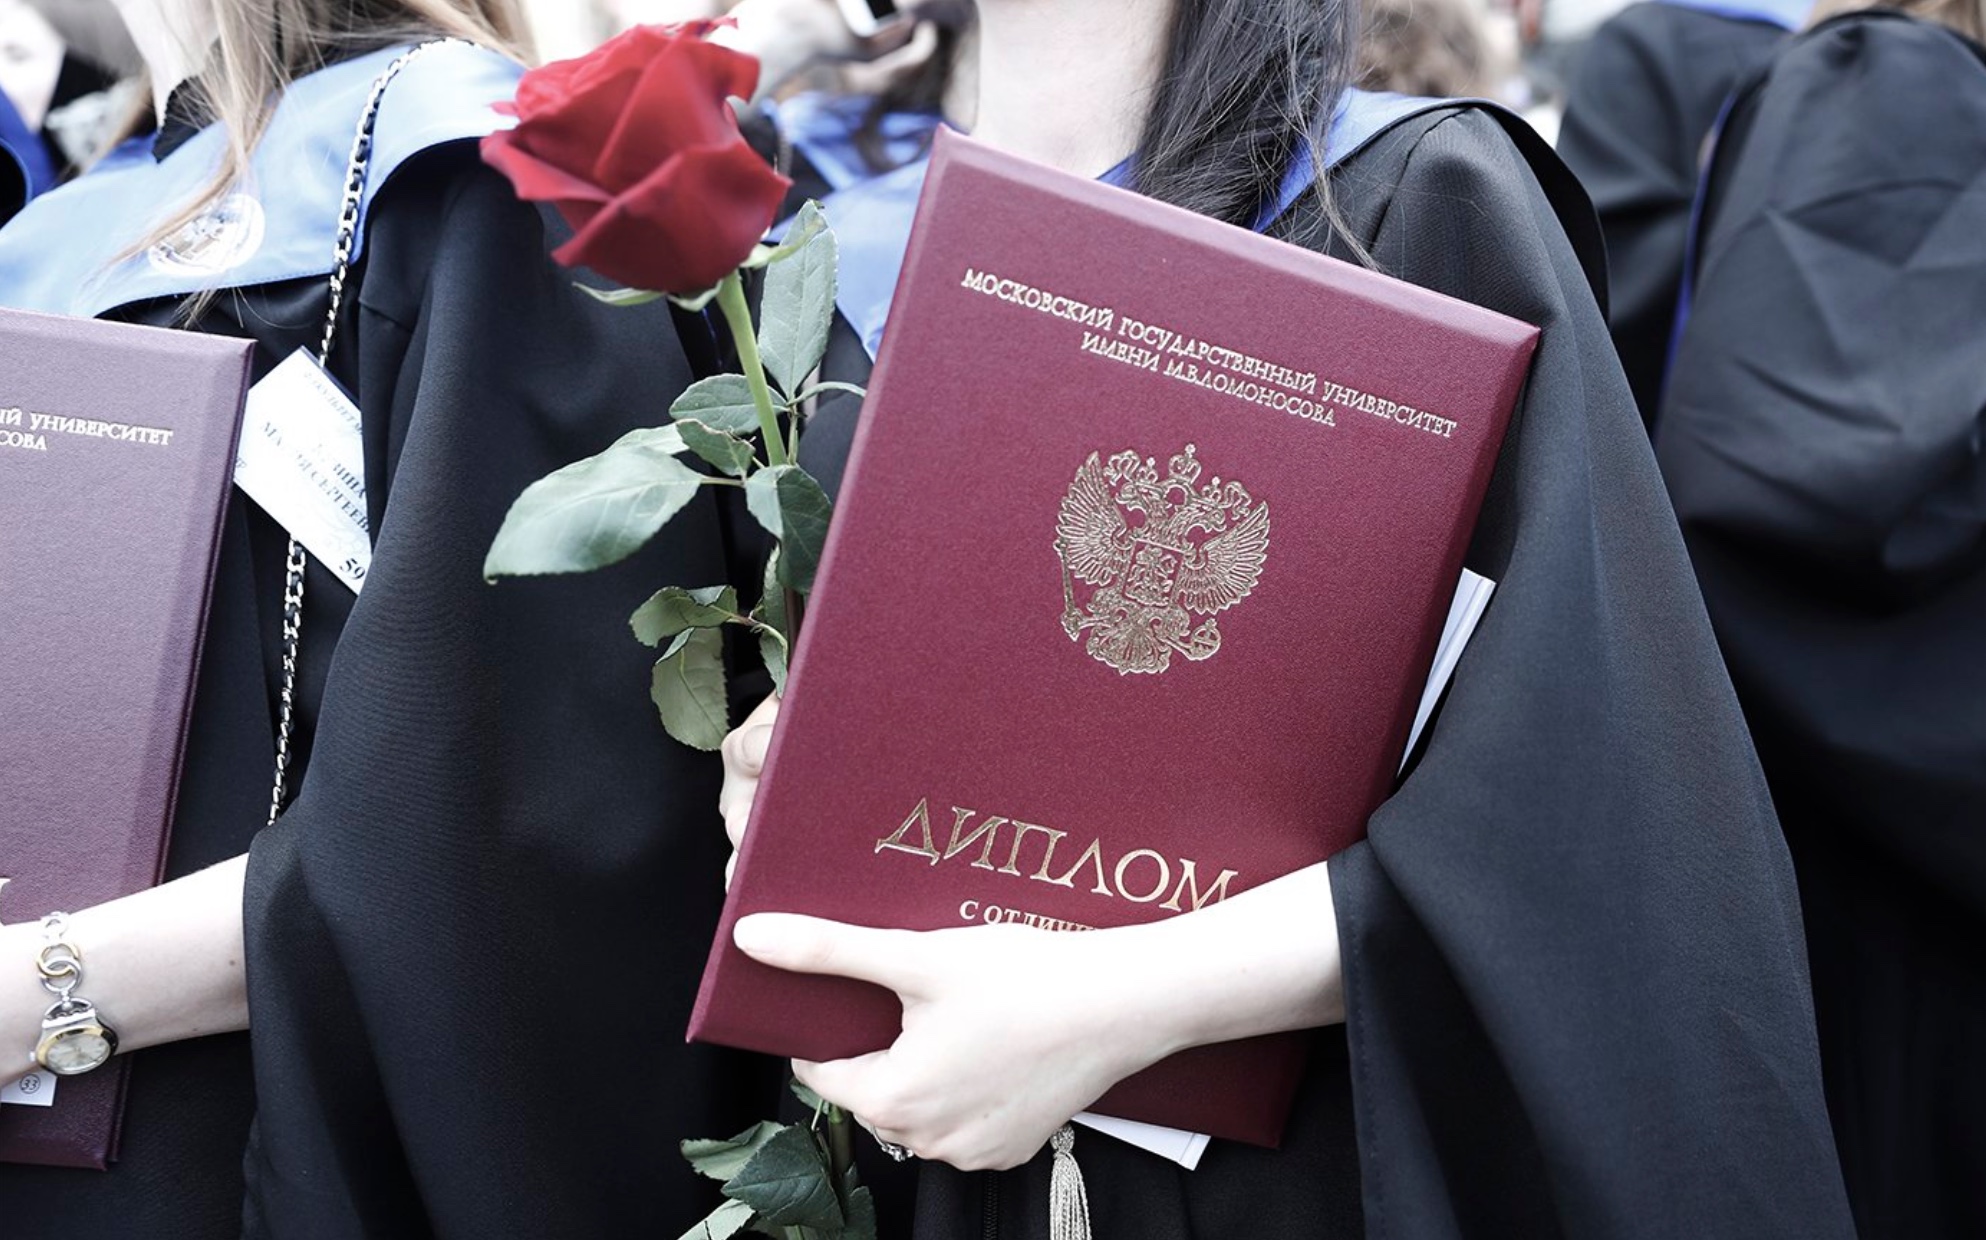 500 000 рублей в “подарок” за получение диплома и большие стипендии - что пообещали студентам российских ВУЗов